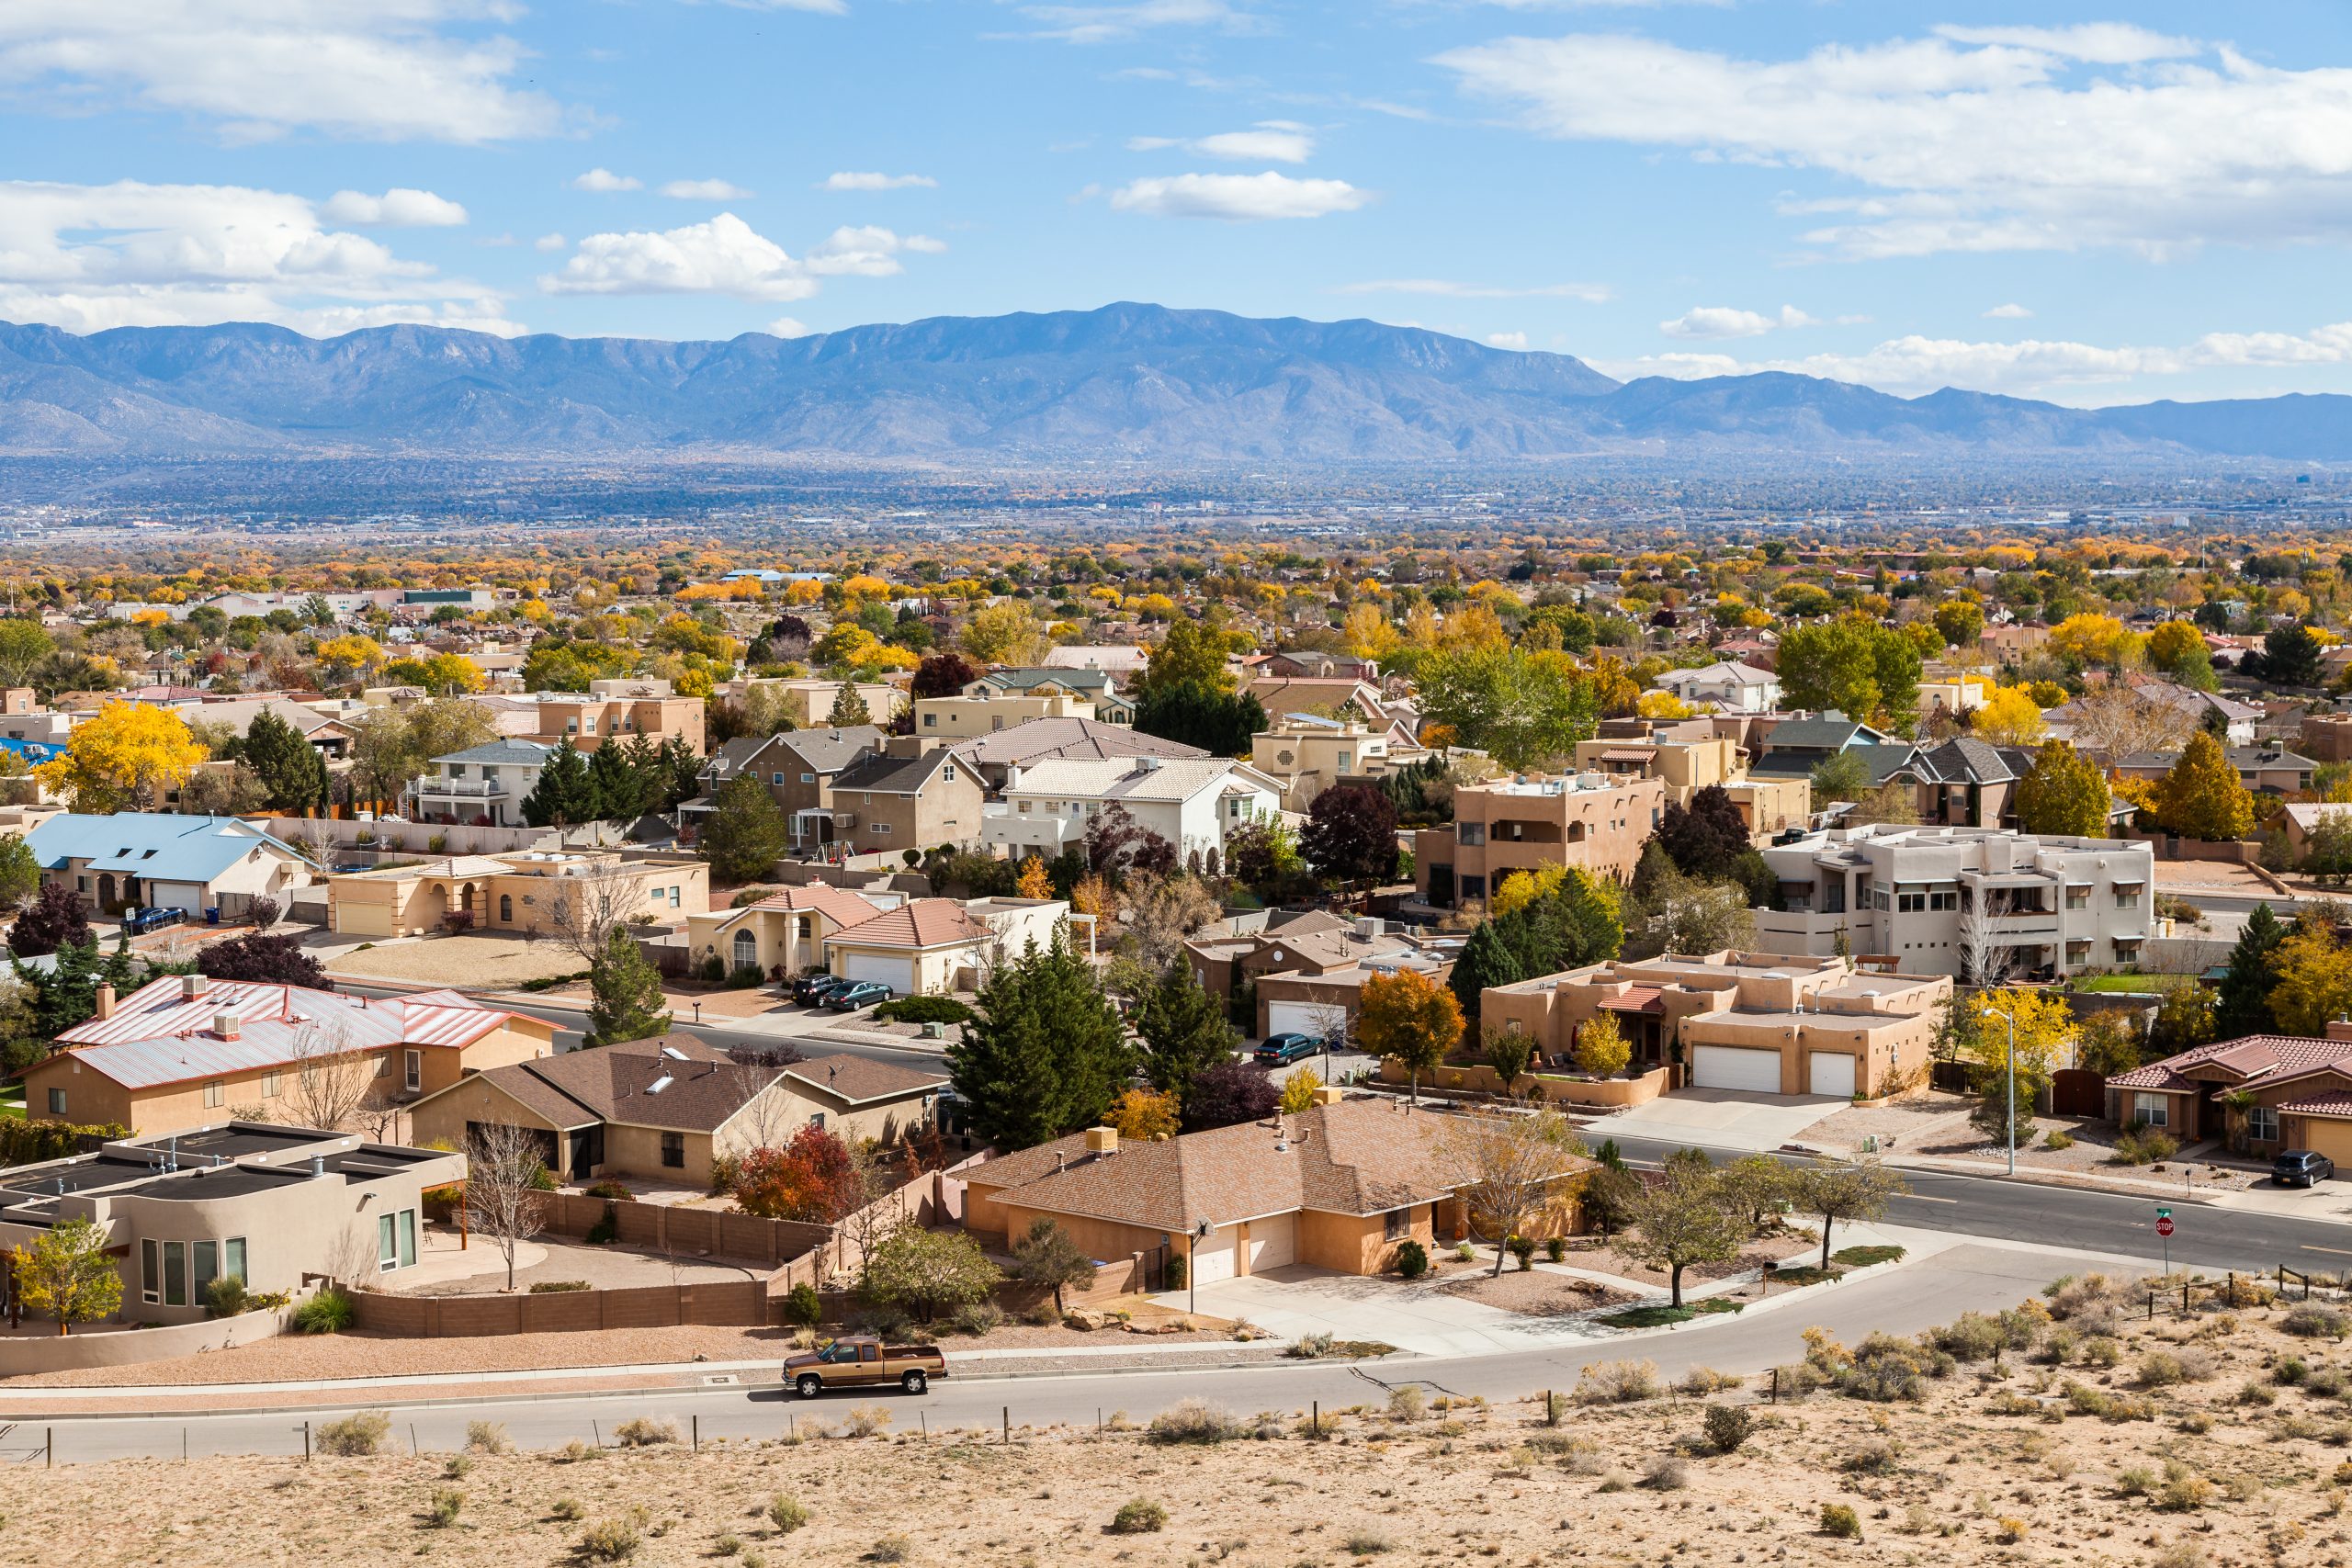 A beautiful neighborhood in Rio Rancho Albuquerque New Mexico.